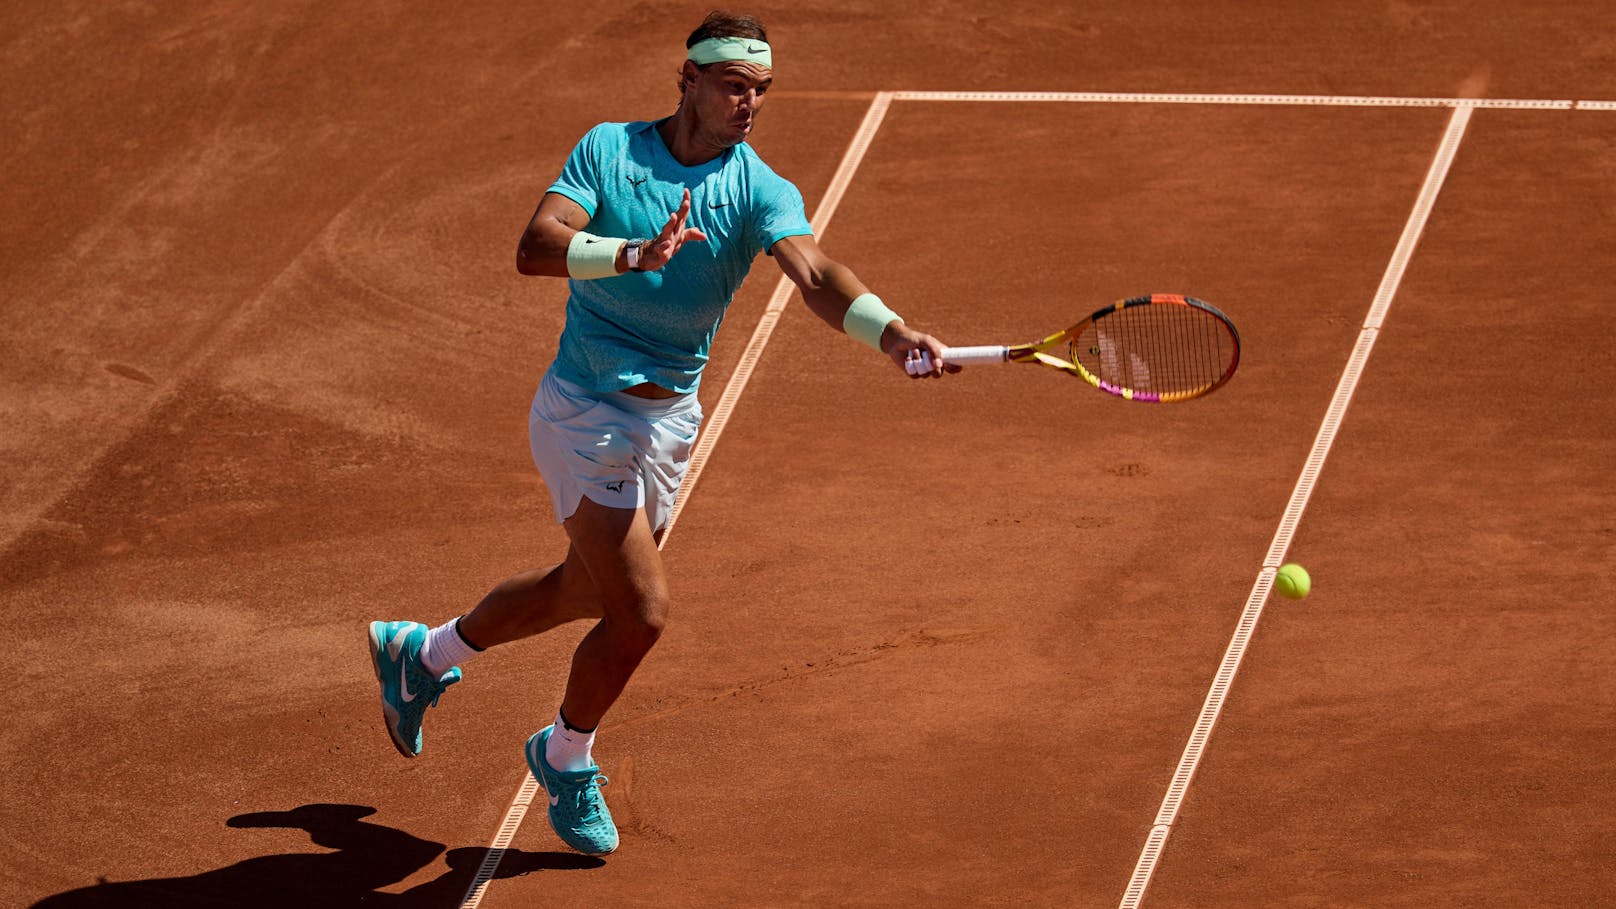 Tennis-Star Nadal unzufrieden: "Weit davon entfernt"